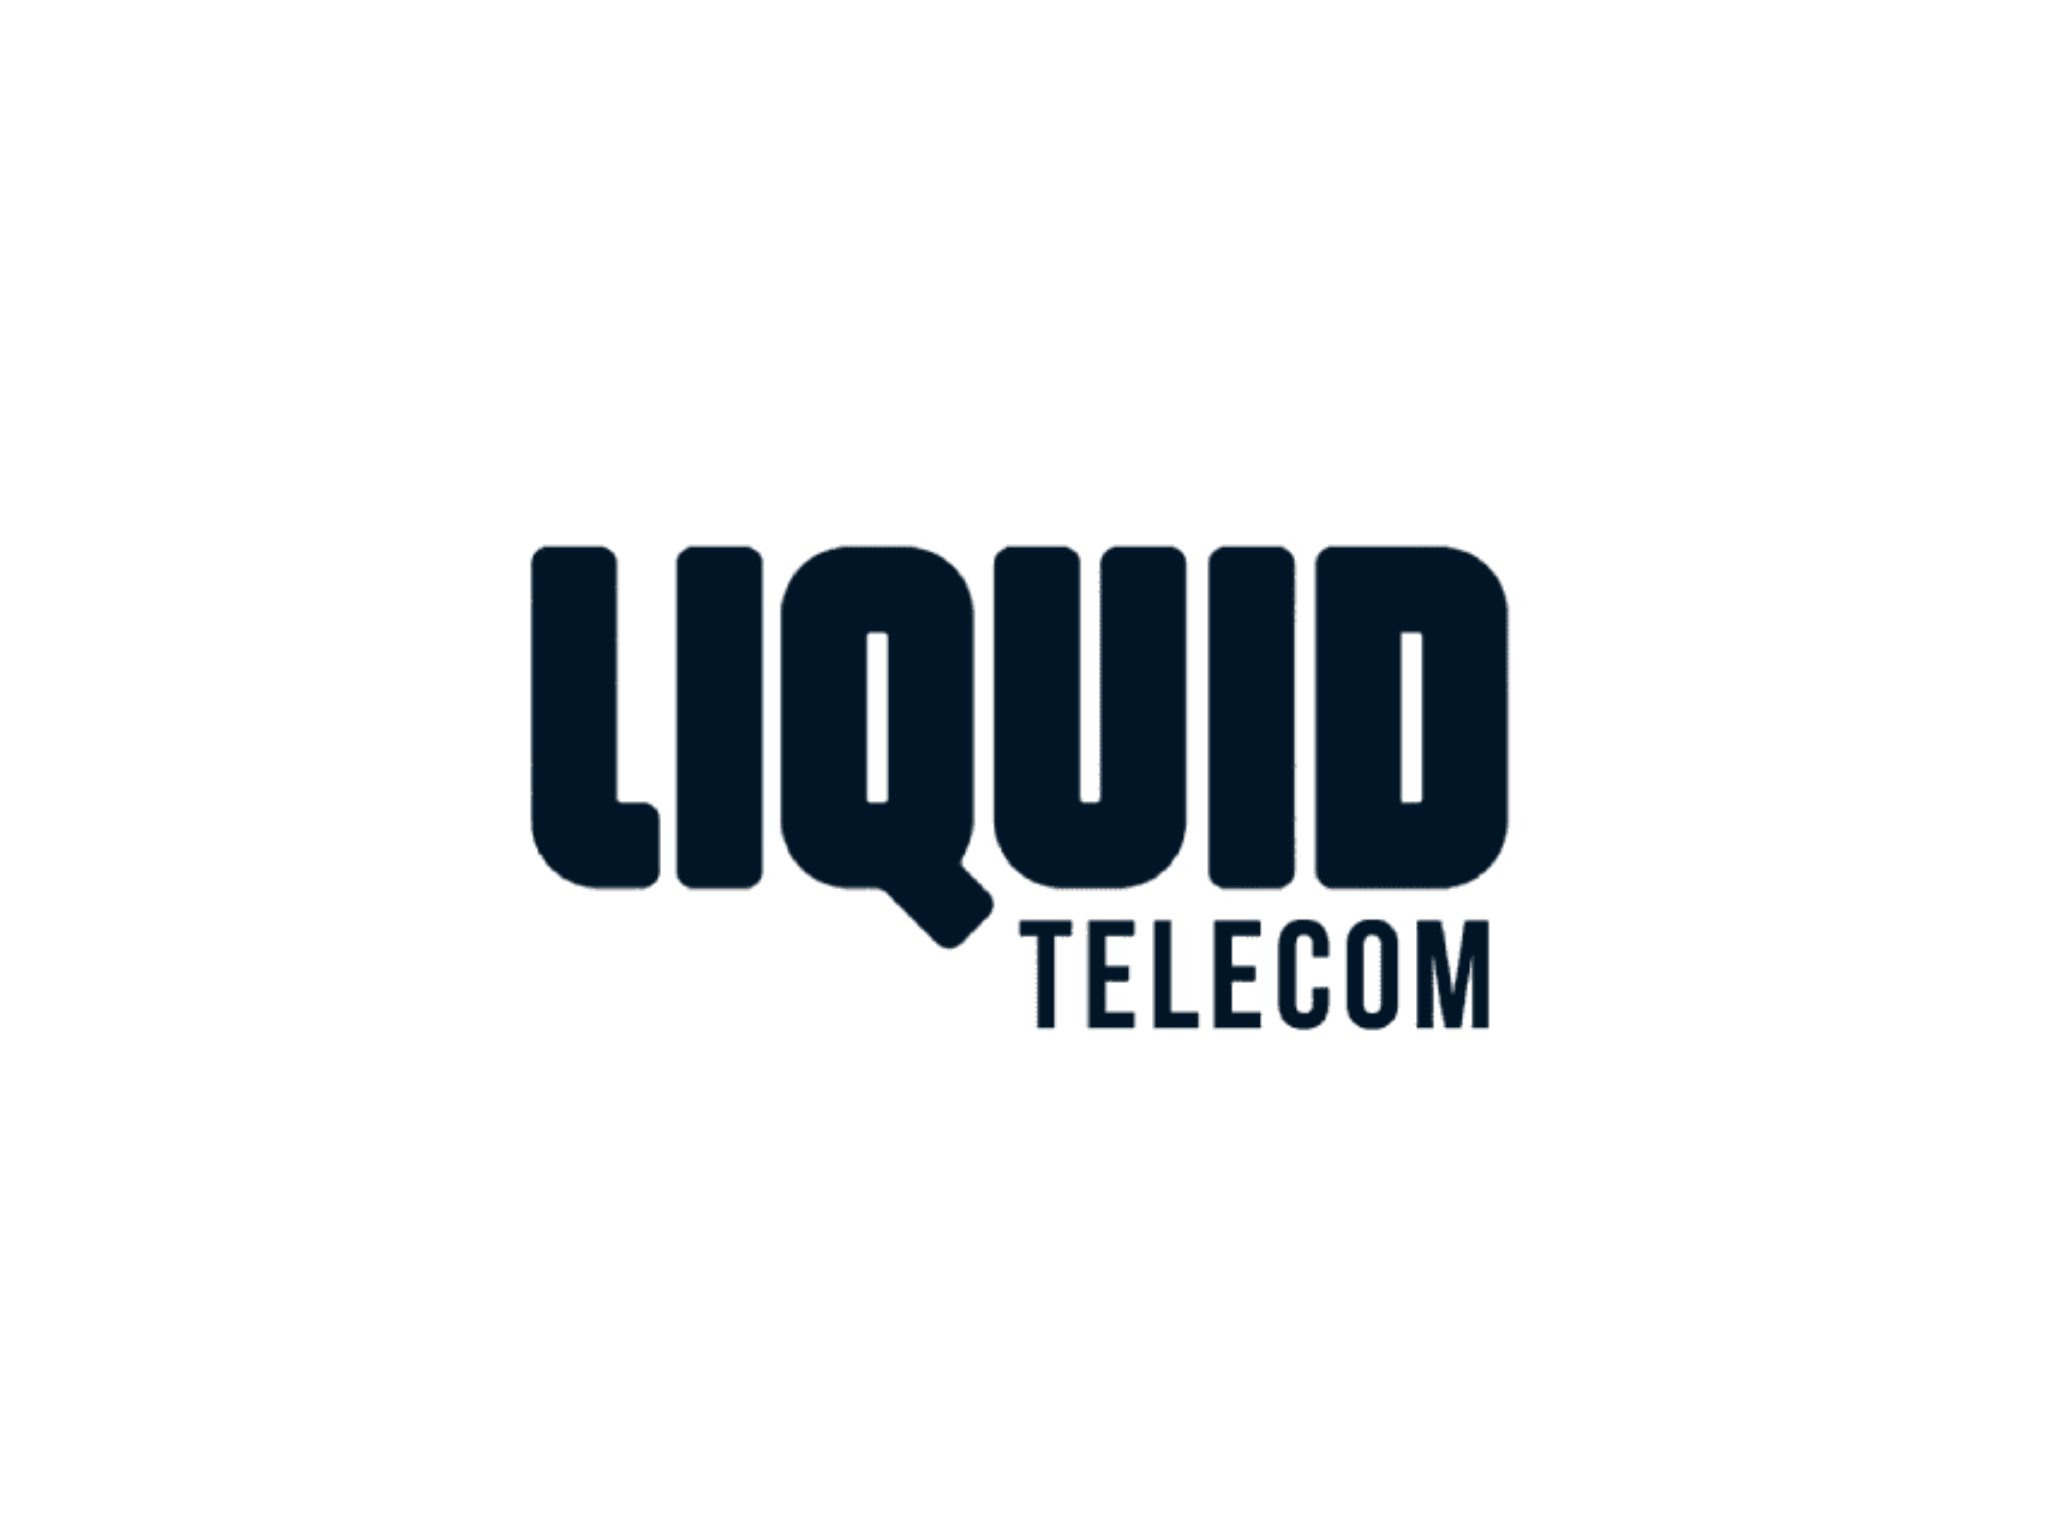 Dark Liquid Telecom Logo on transparent background